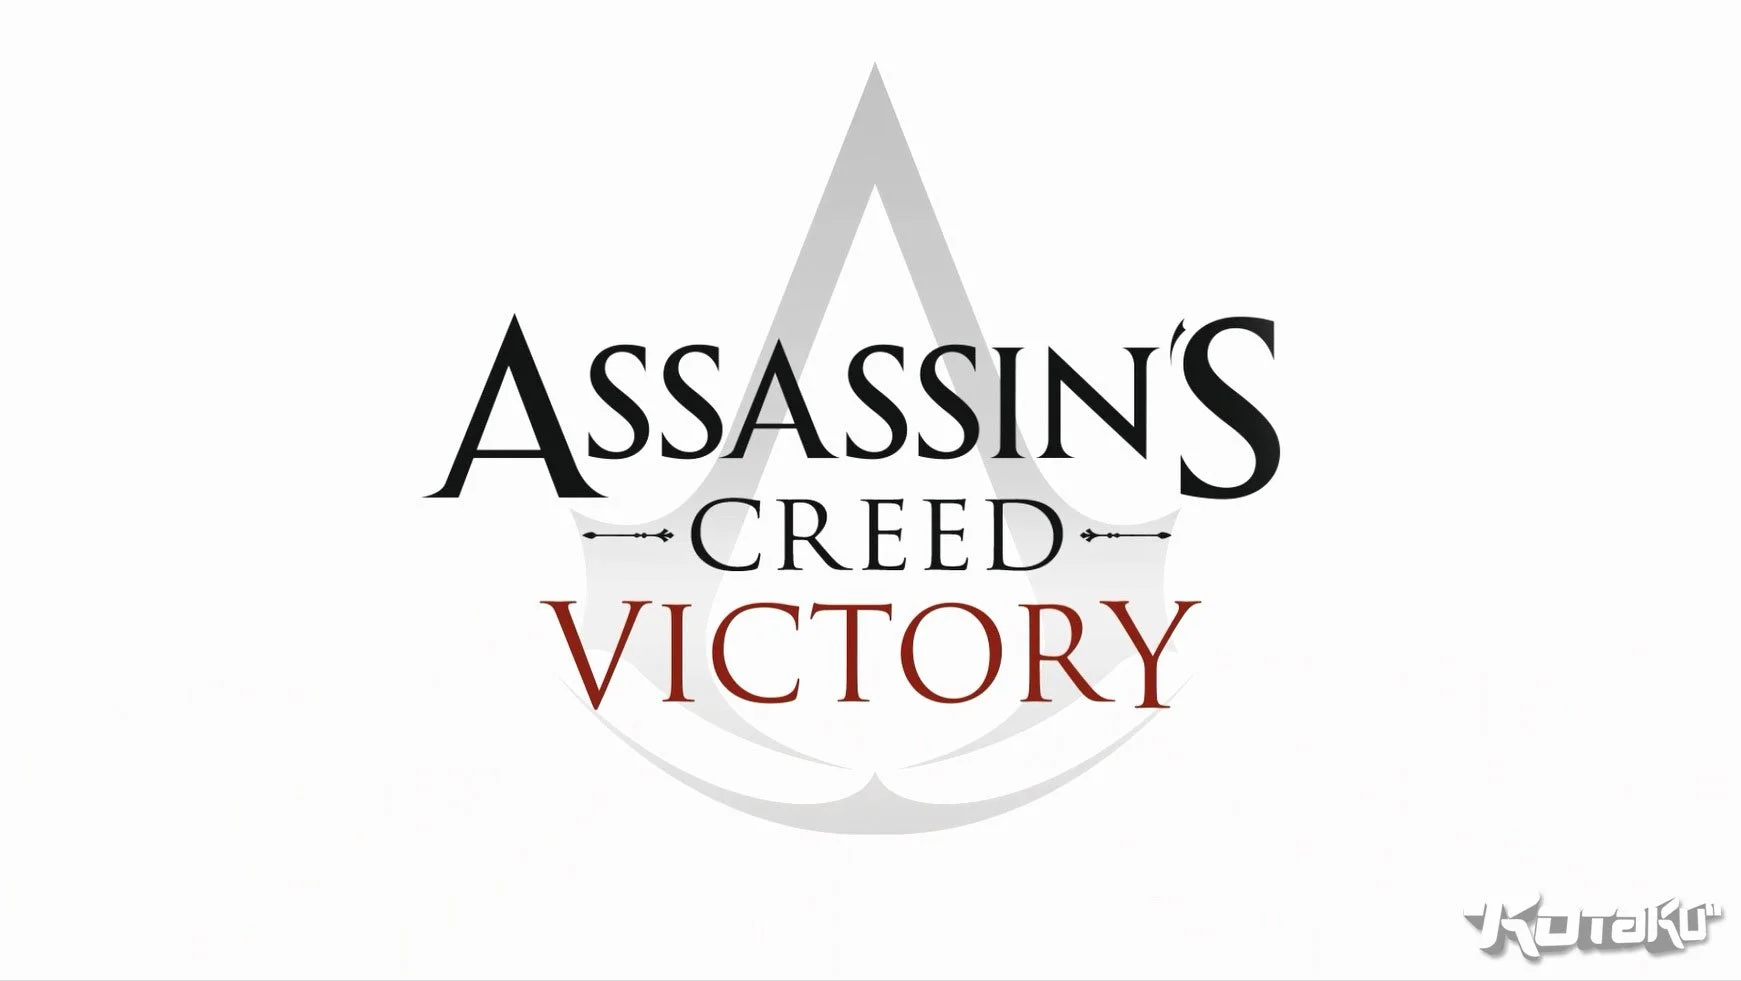 События следующей части Assassin's Creed развернутся в Лондоне - фото 1